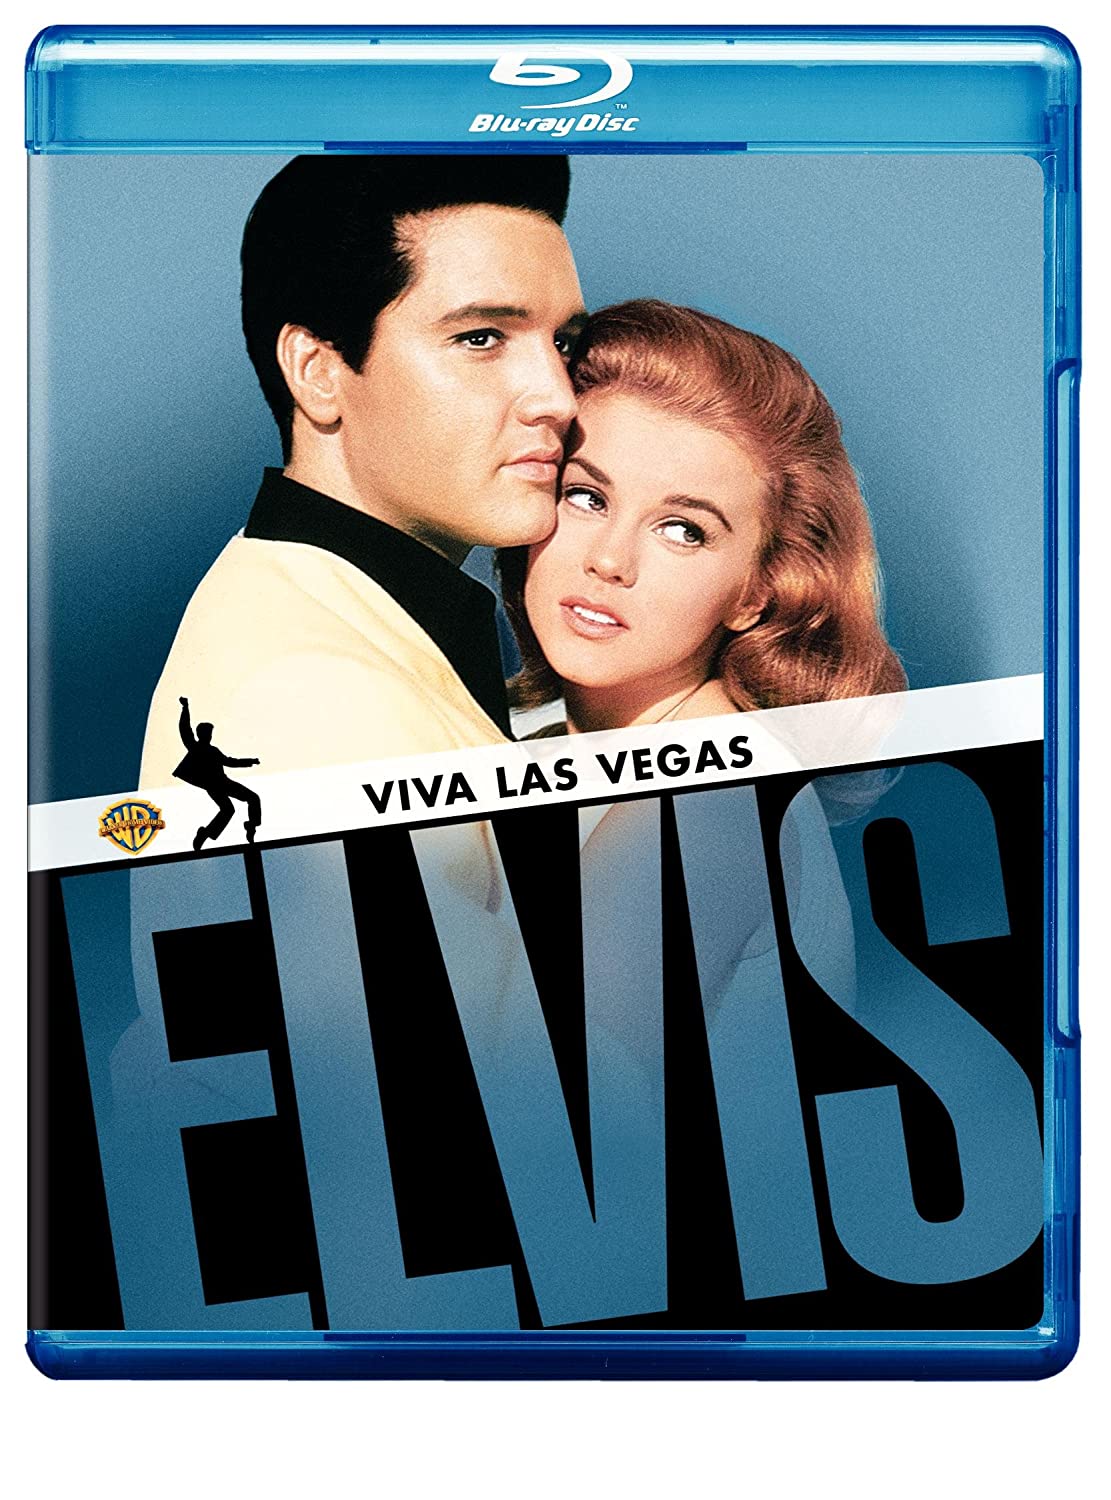 Viva Las Vegas - Blu-ray [ 1964 ]  - Musical Movies On Blu-ray - Movies On GRUV